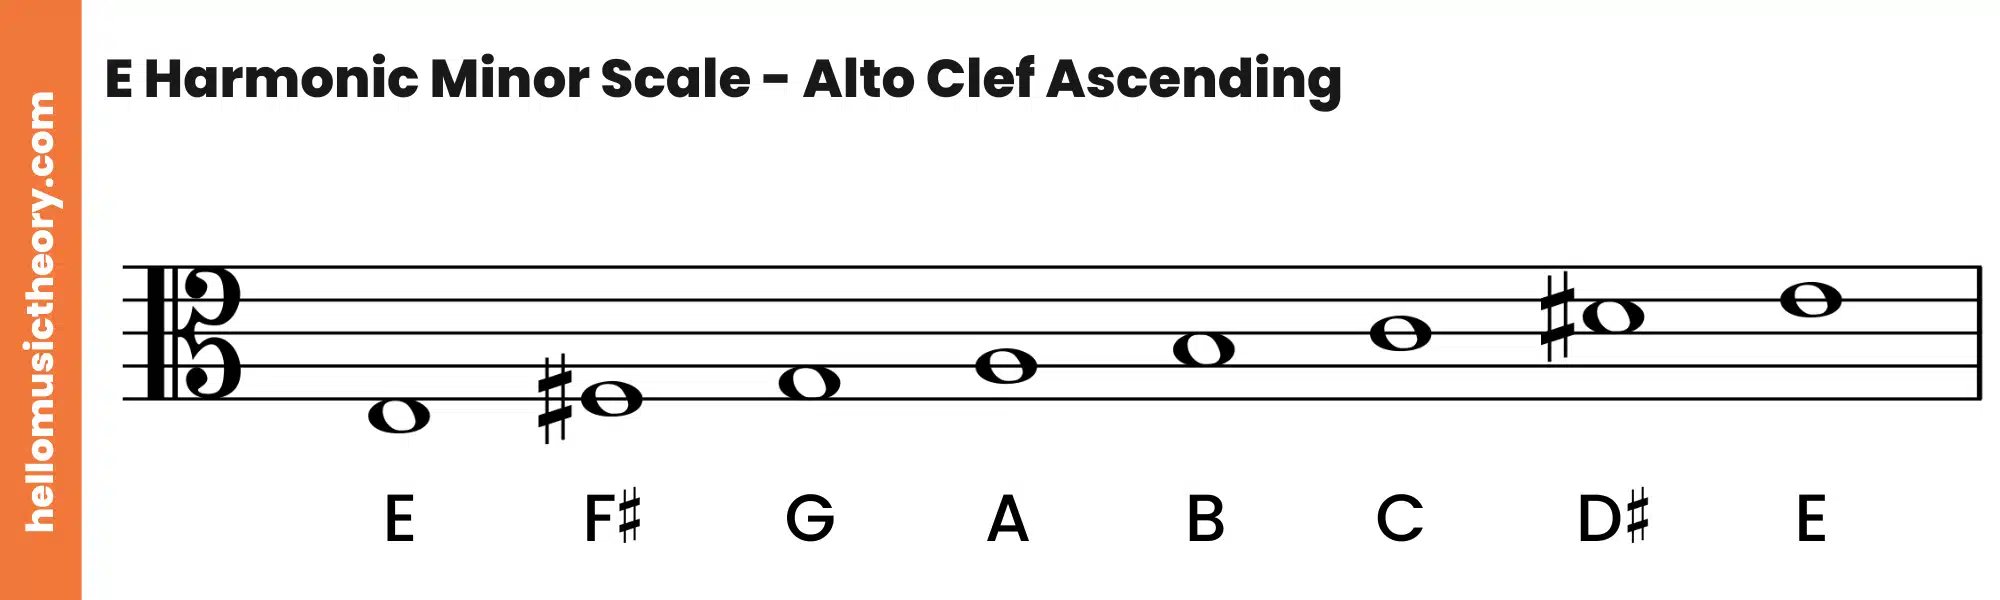 E Harmonic Minor Scale Alto Clef Ascending